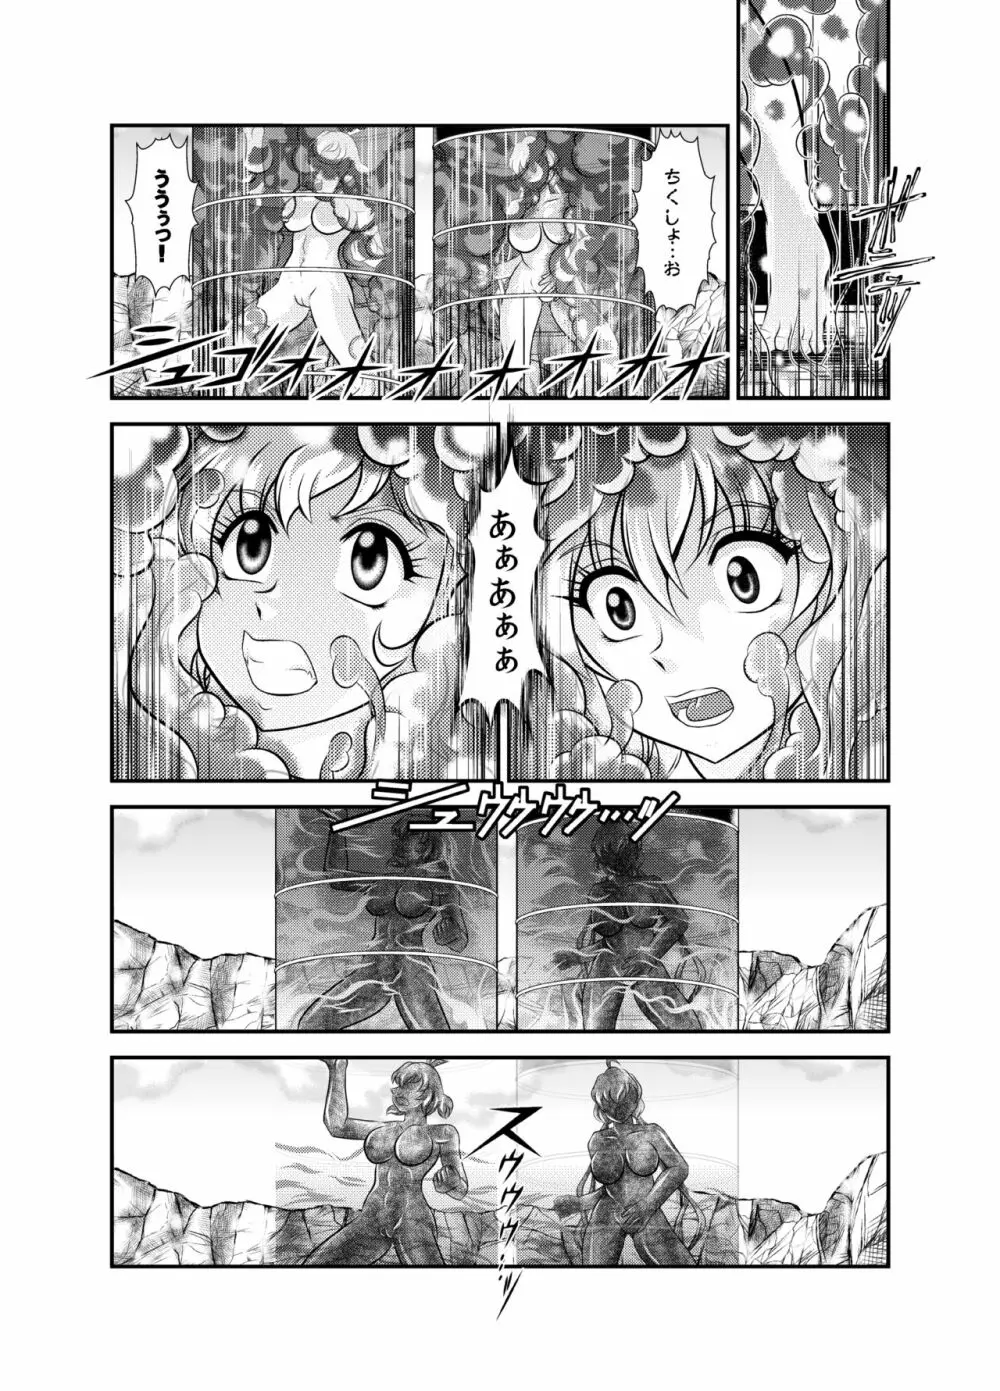 戦姫全滅 EP2:立花響&雪音クリス - page16